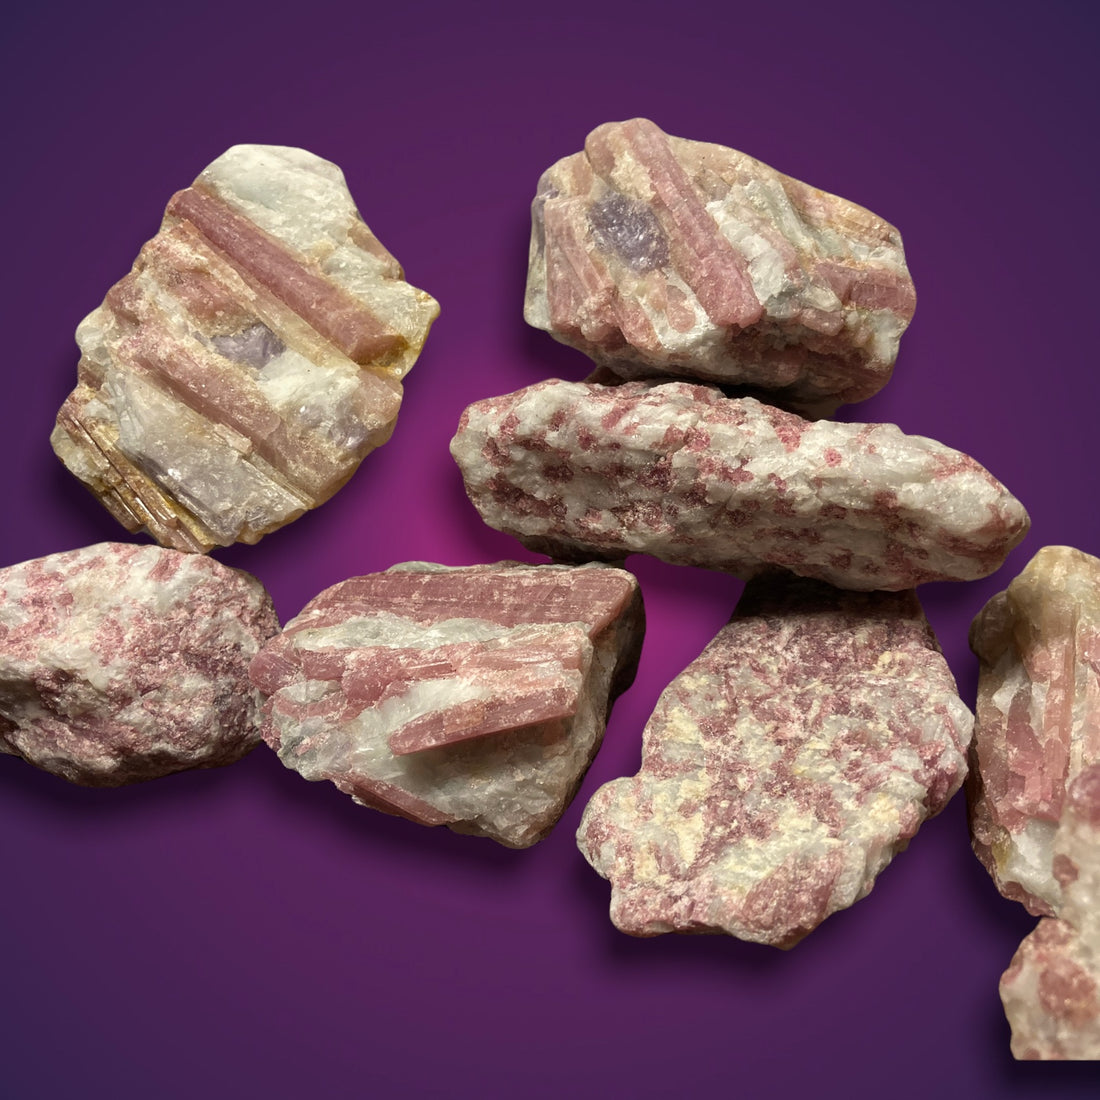 Rubellite Tourmaline Crystals